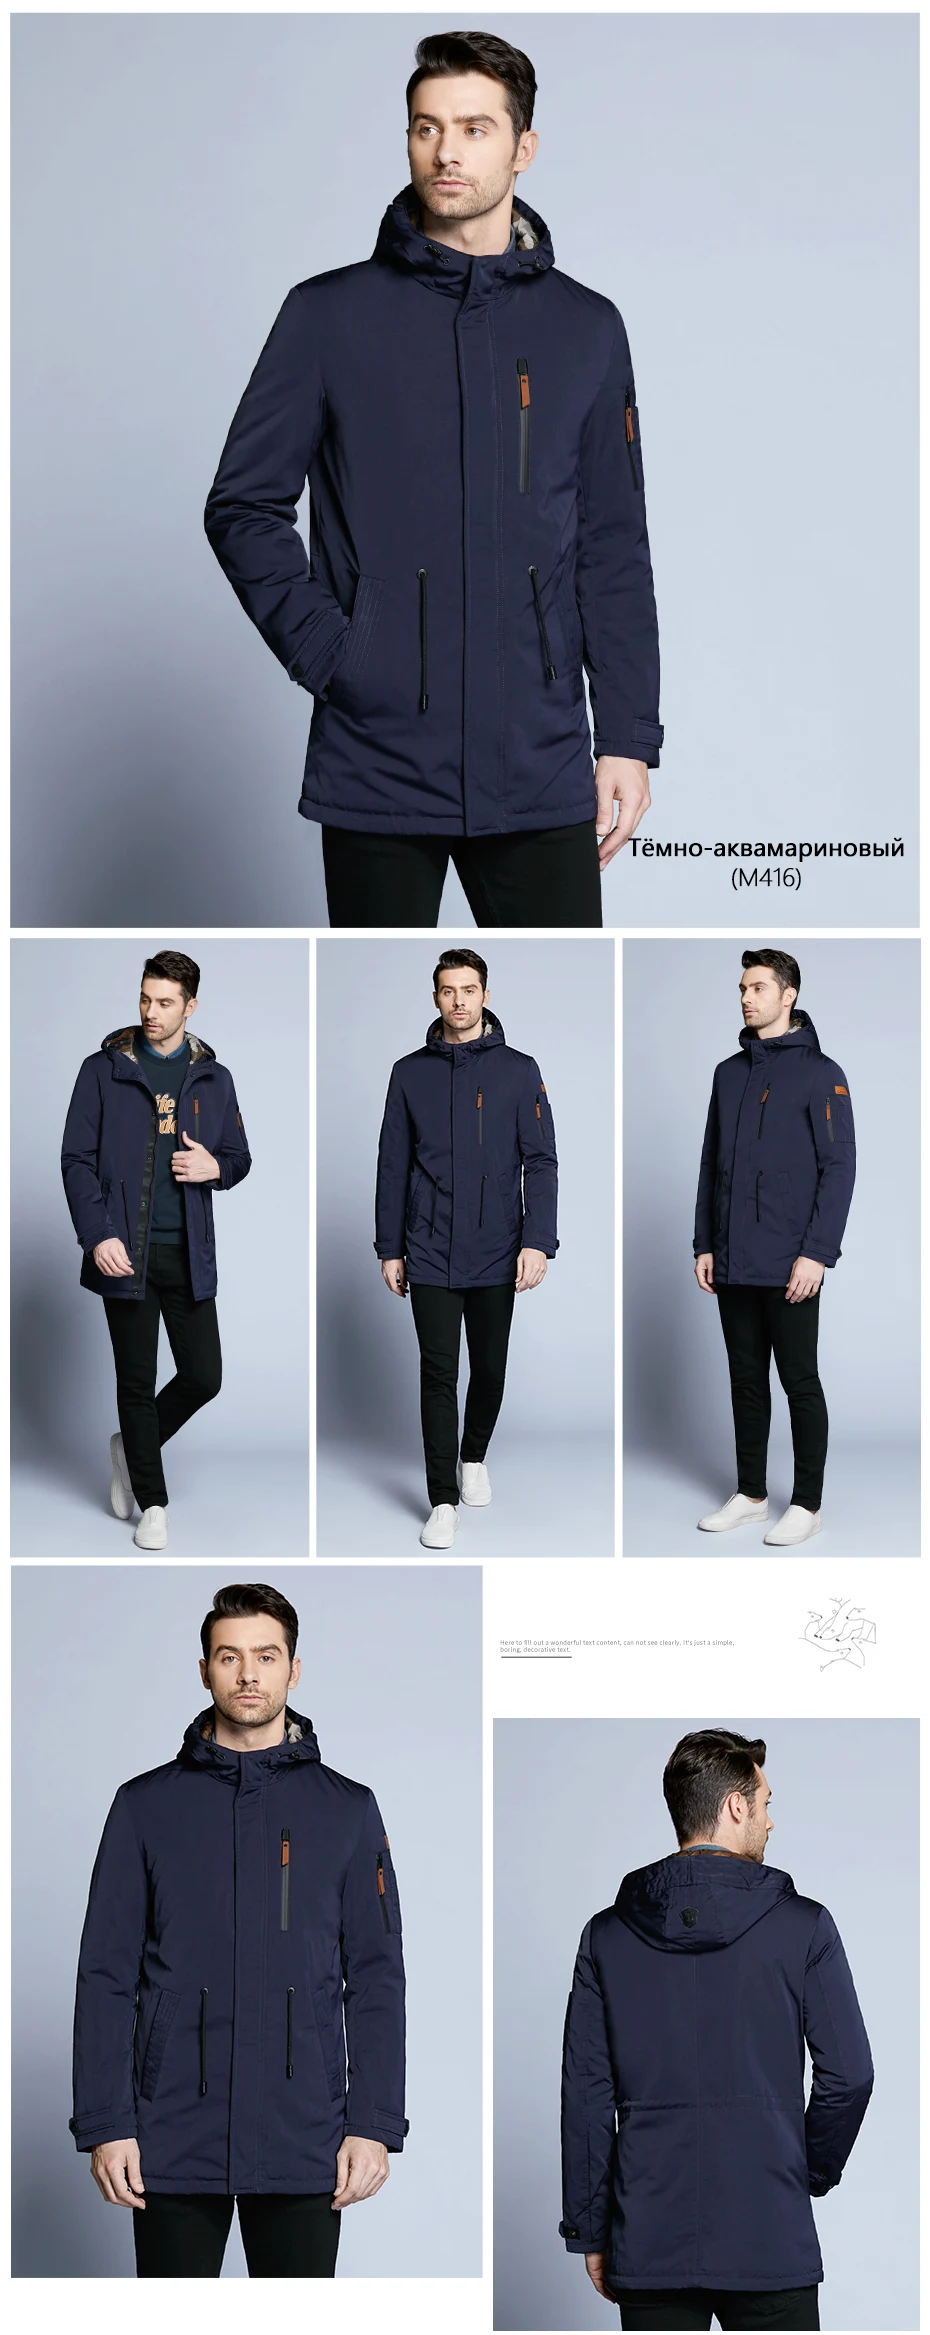 ICEbear Пальто Для Мужчин Регулируемый Пояс Шляпа Съемная Осень Мужчины Случайный Средней Длины Пальто Куртки 17MC017D